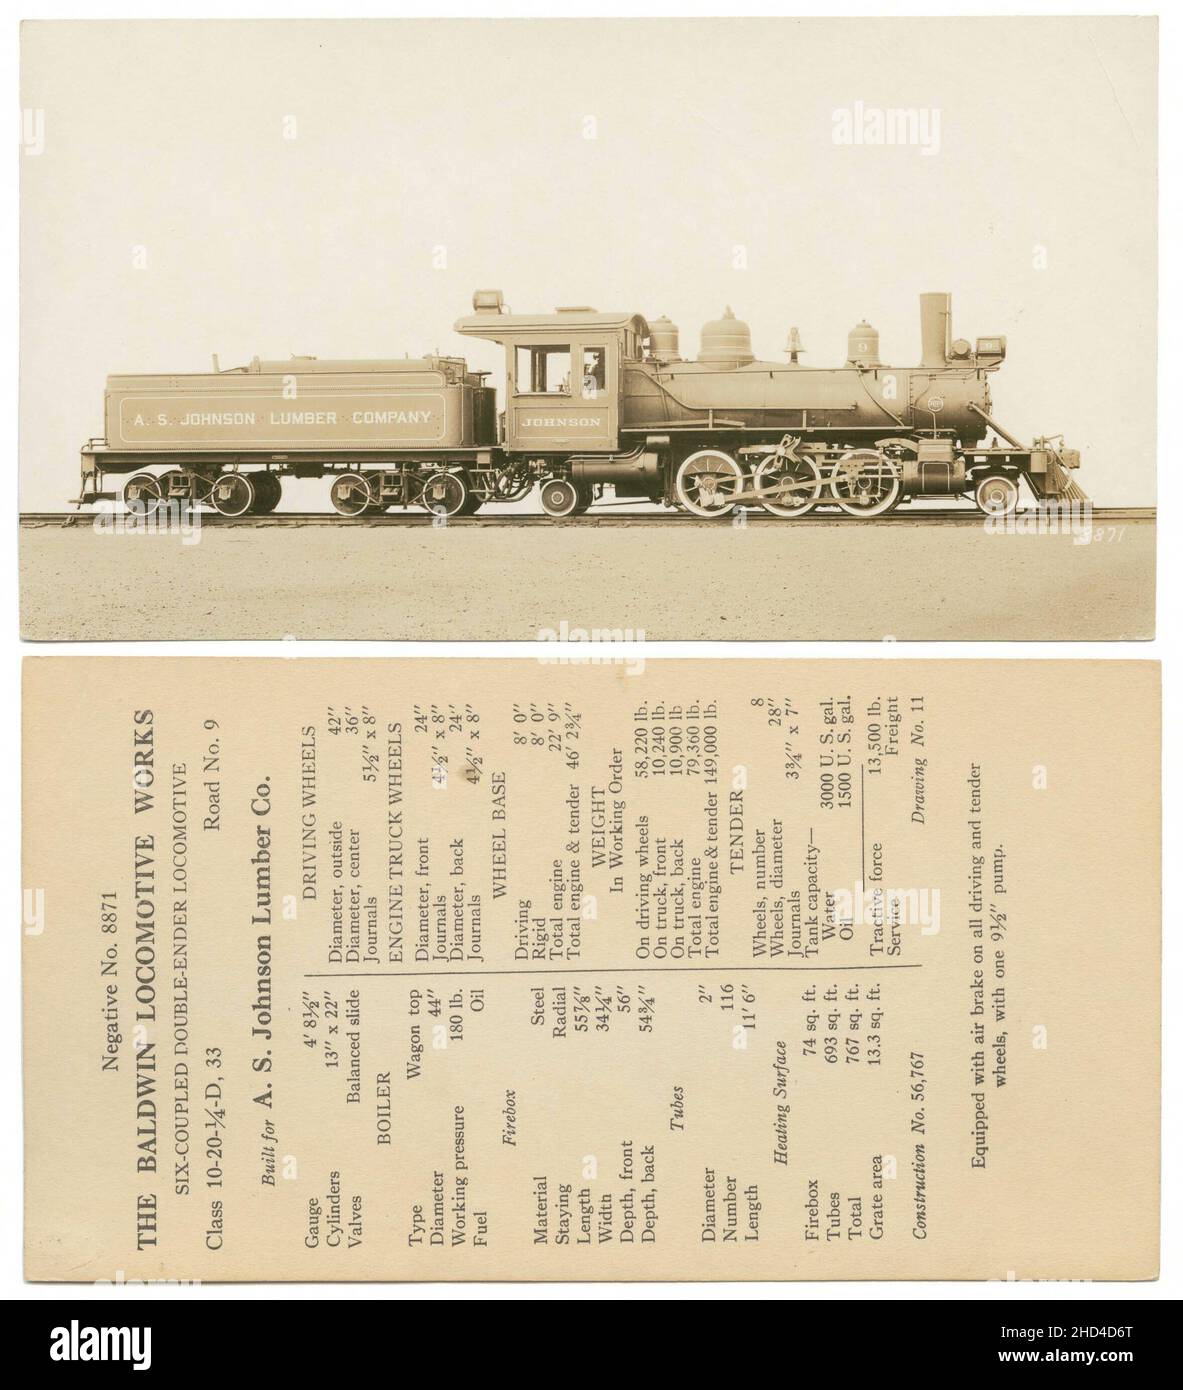 Eine alte Illustration einer alten Dampflokomotive aus dem 19. Jahrhundert, die mit ihren Merkmalen veröffentlicht wurde Stockfoto